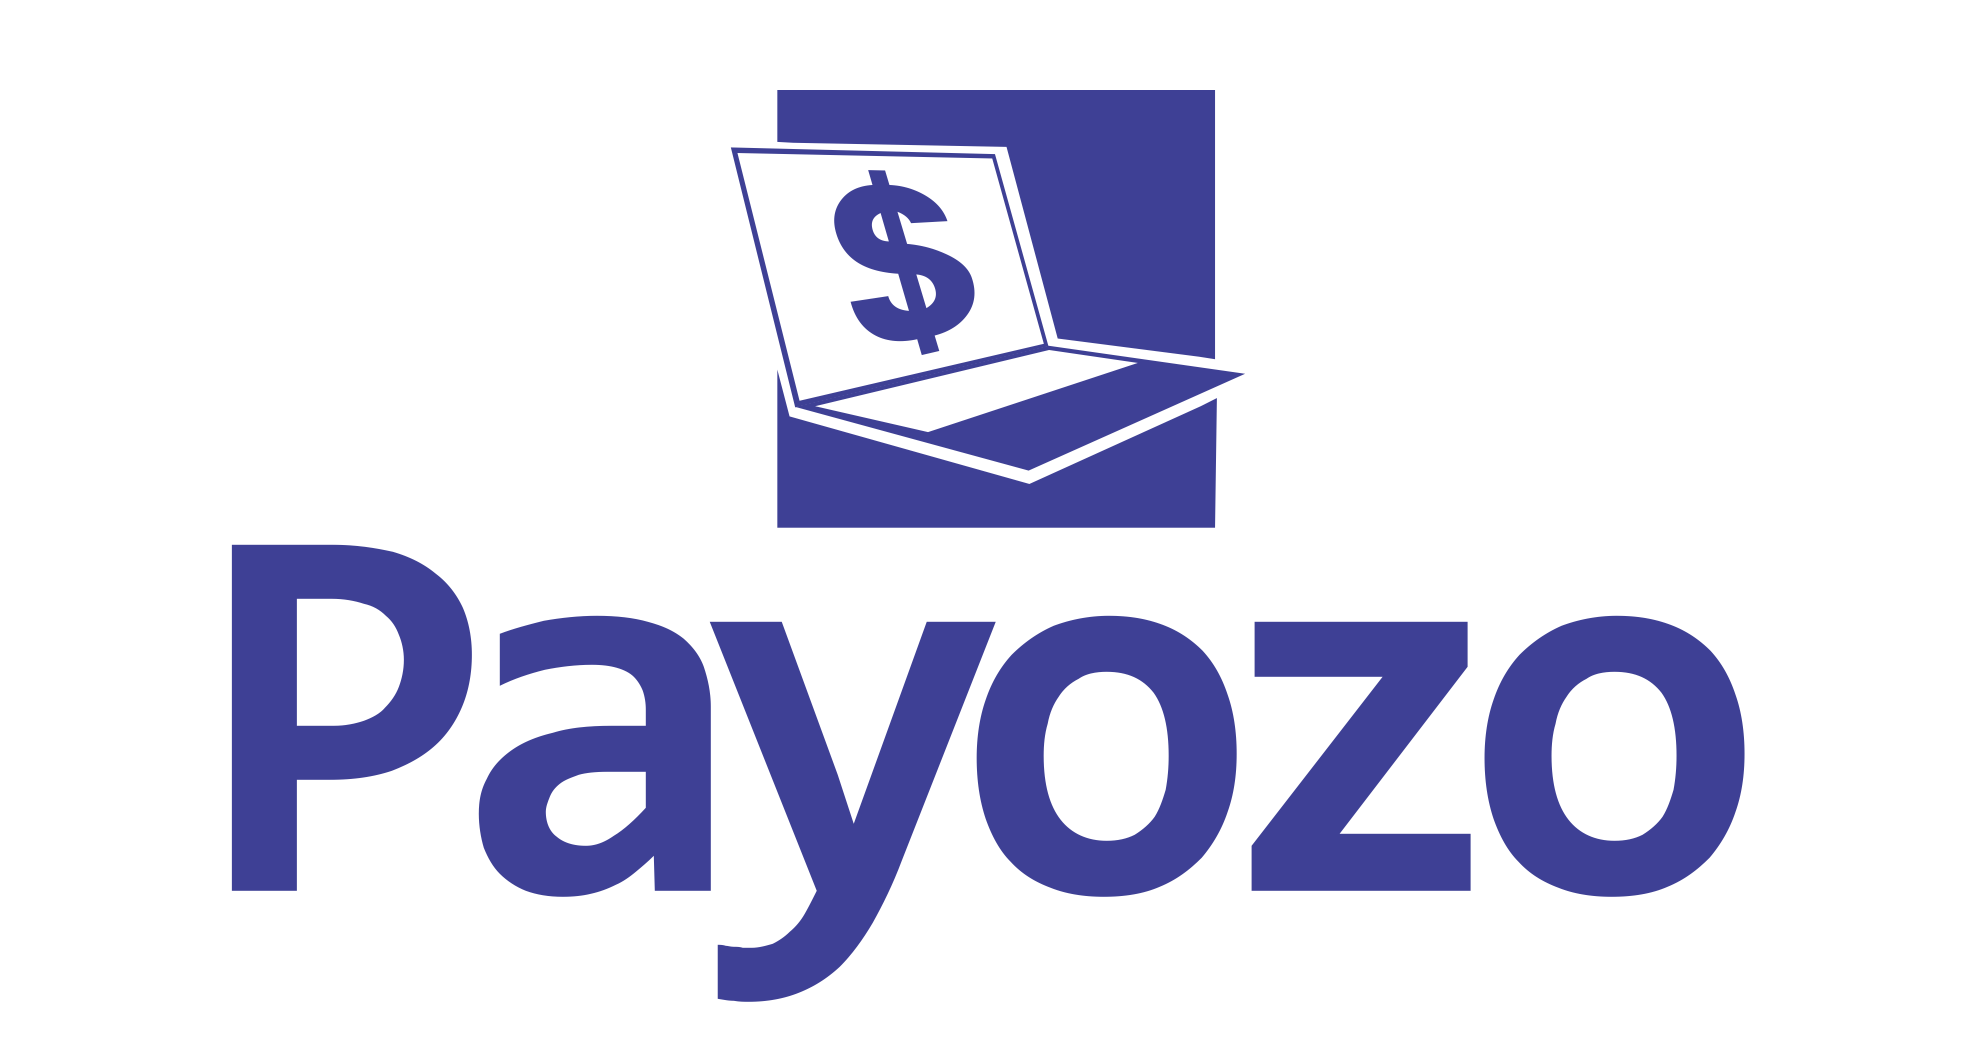 Payozo